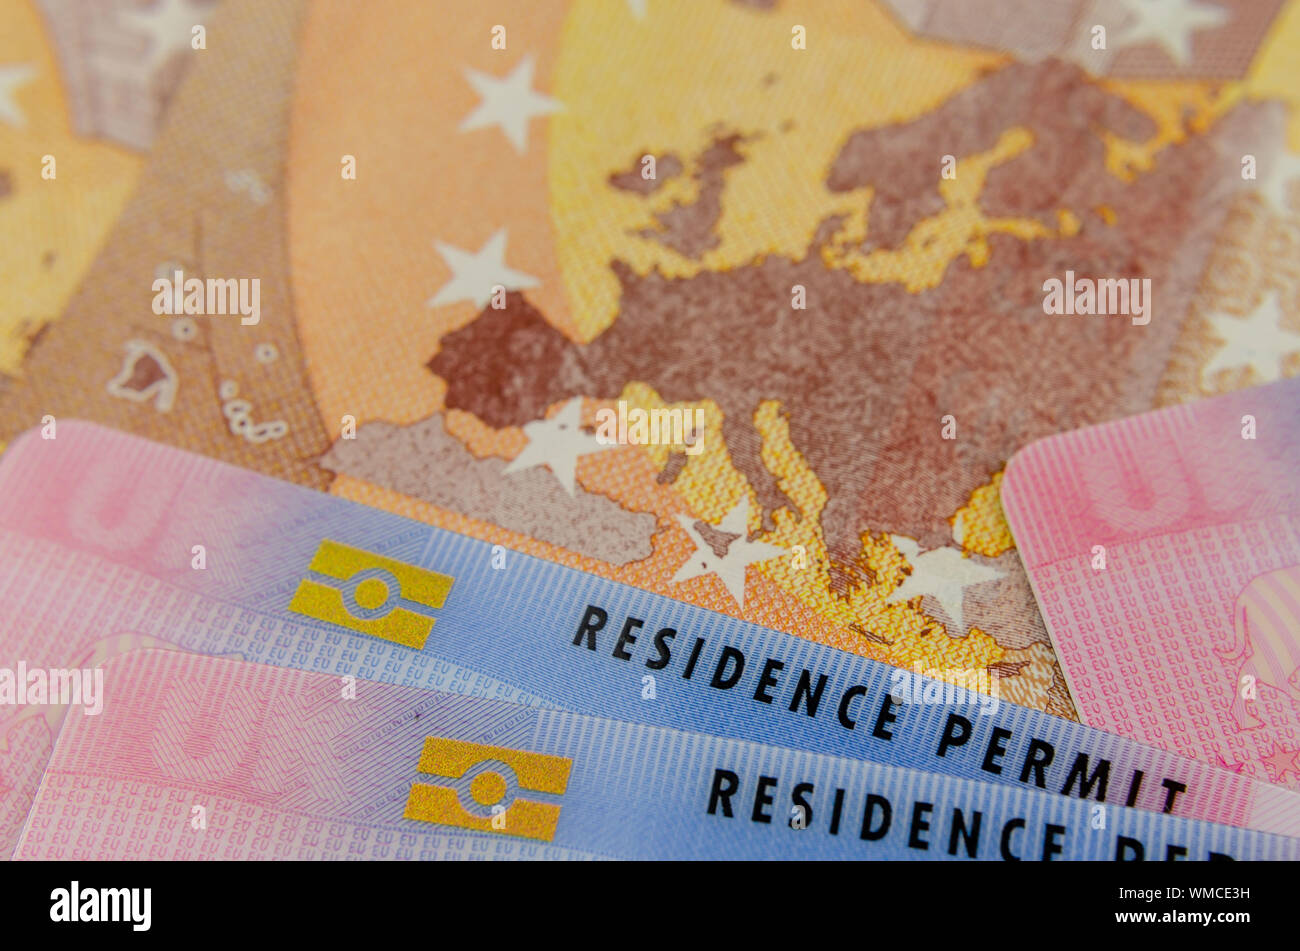 Cartes de séjour biométrique britannique et une carte de l'UE sur le billet d'Euro. Photo concept pour l'immigration. Banque D'Images